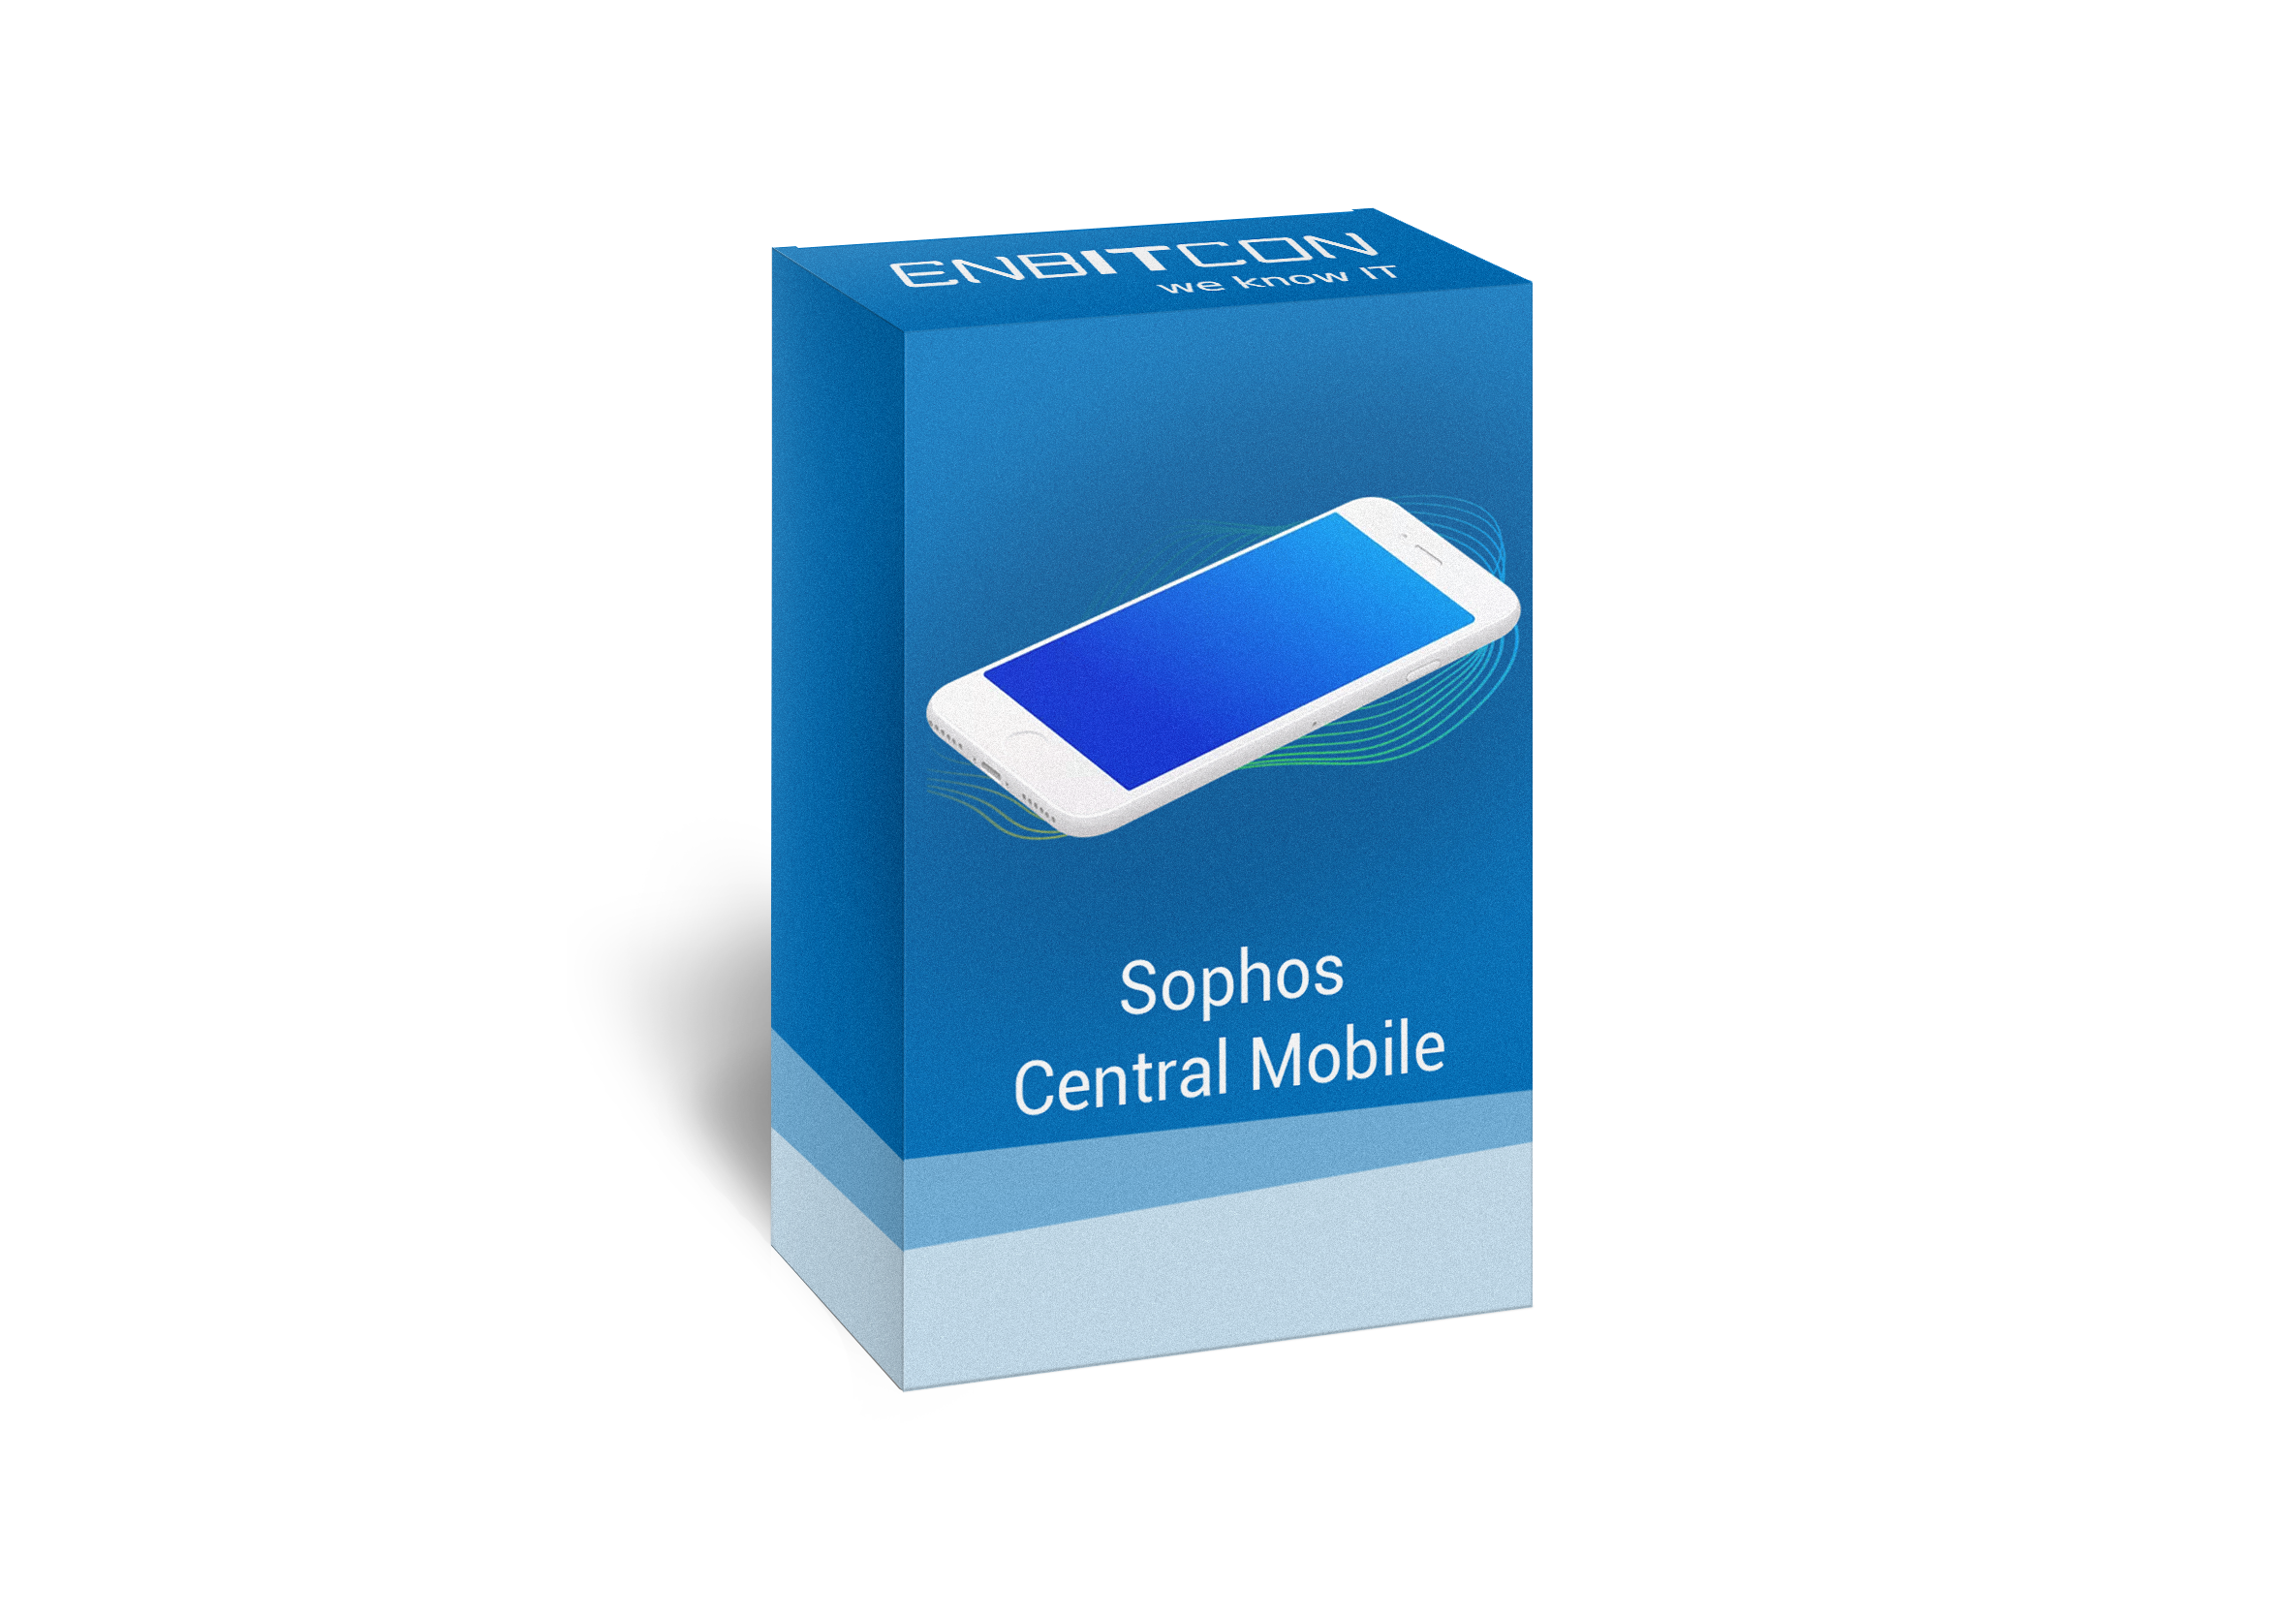 Sophos  Central Mobile Box Vorschaubild bestehend aus einem Smartphone auf einer blauen Box